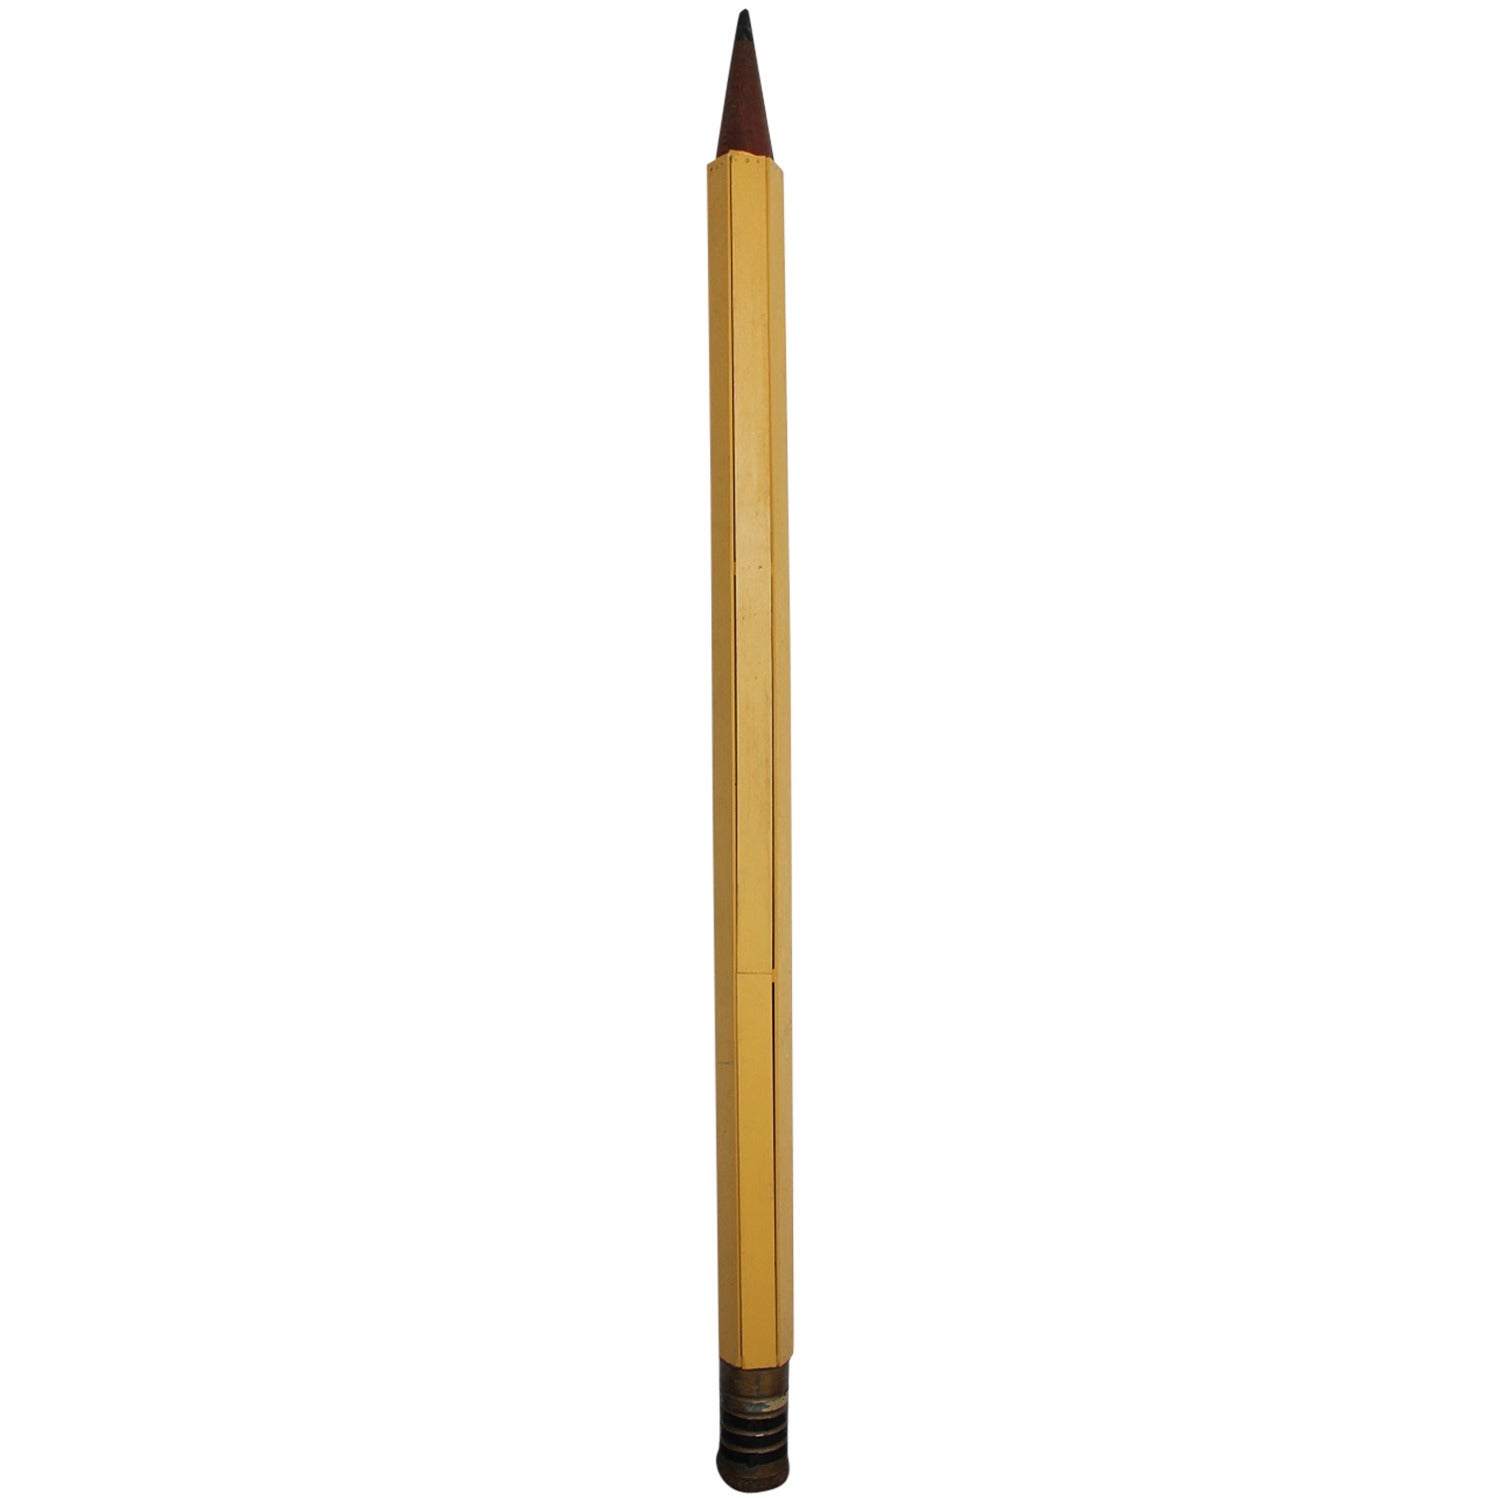 Tall Folk Art Wood Pencil